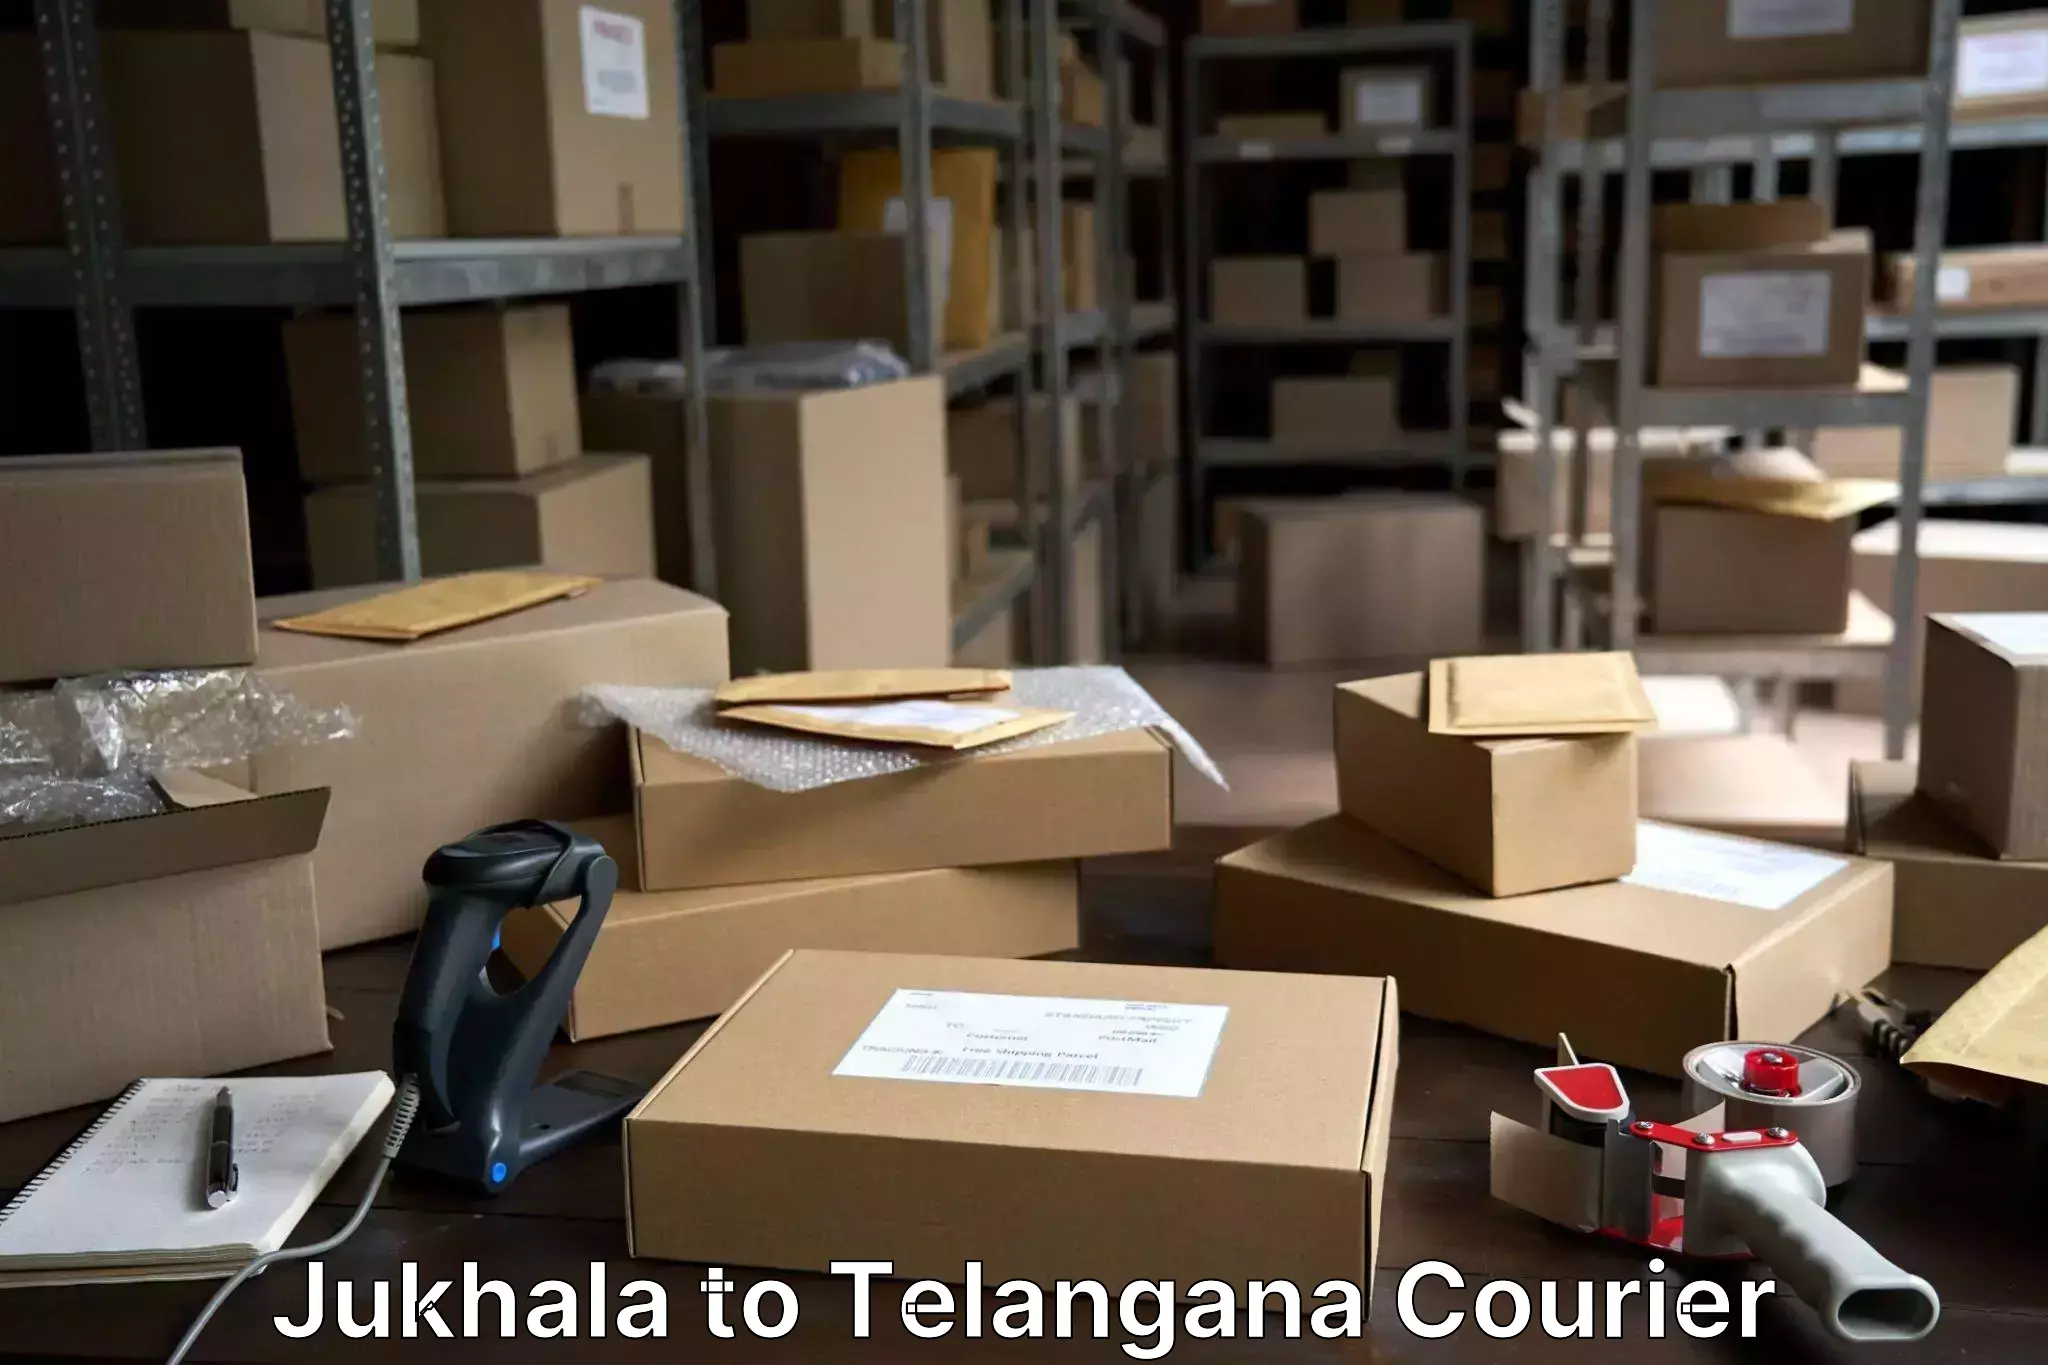 Luggage transport deals Jukhala to Kothakota